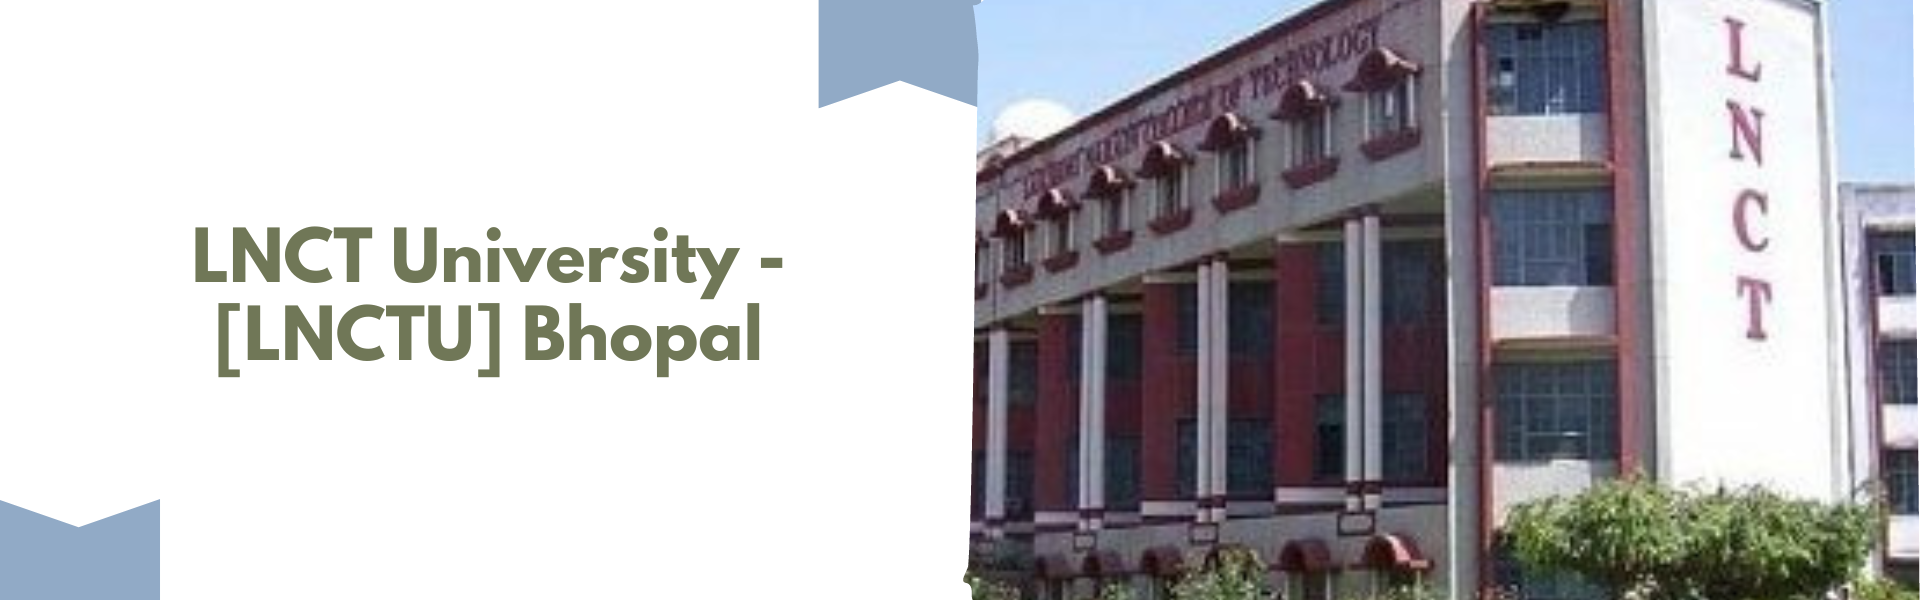 LNCT University - [LNCTU] Bhopal